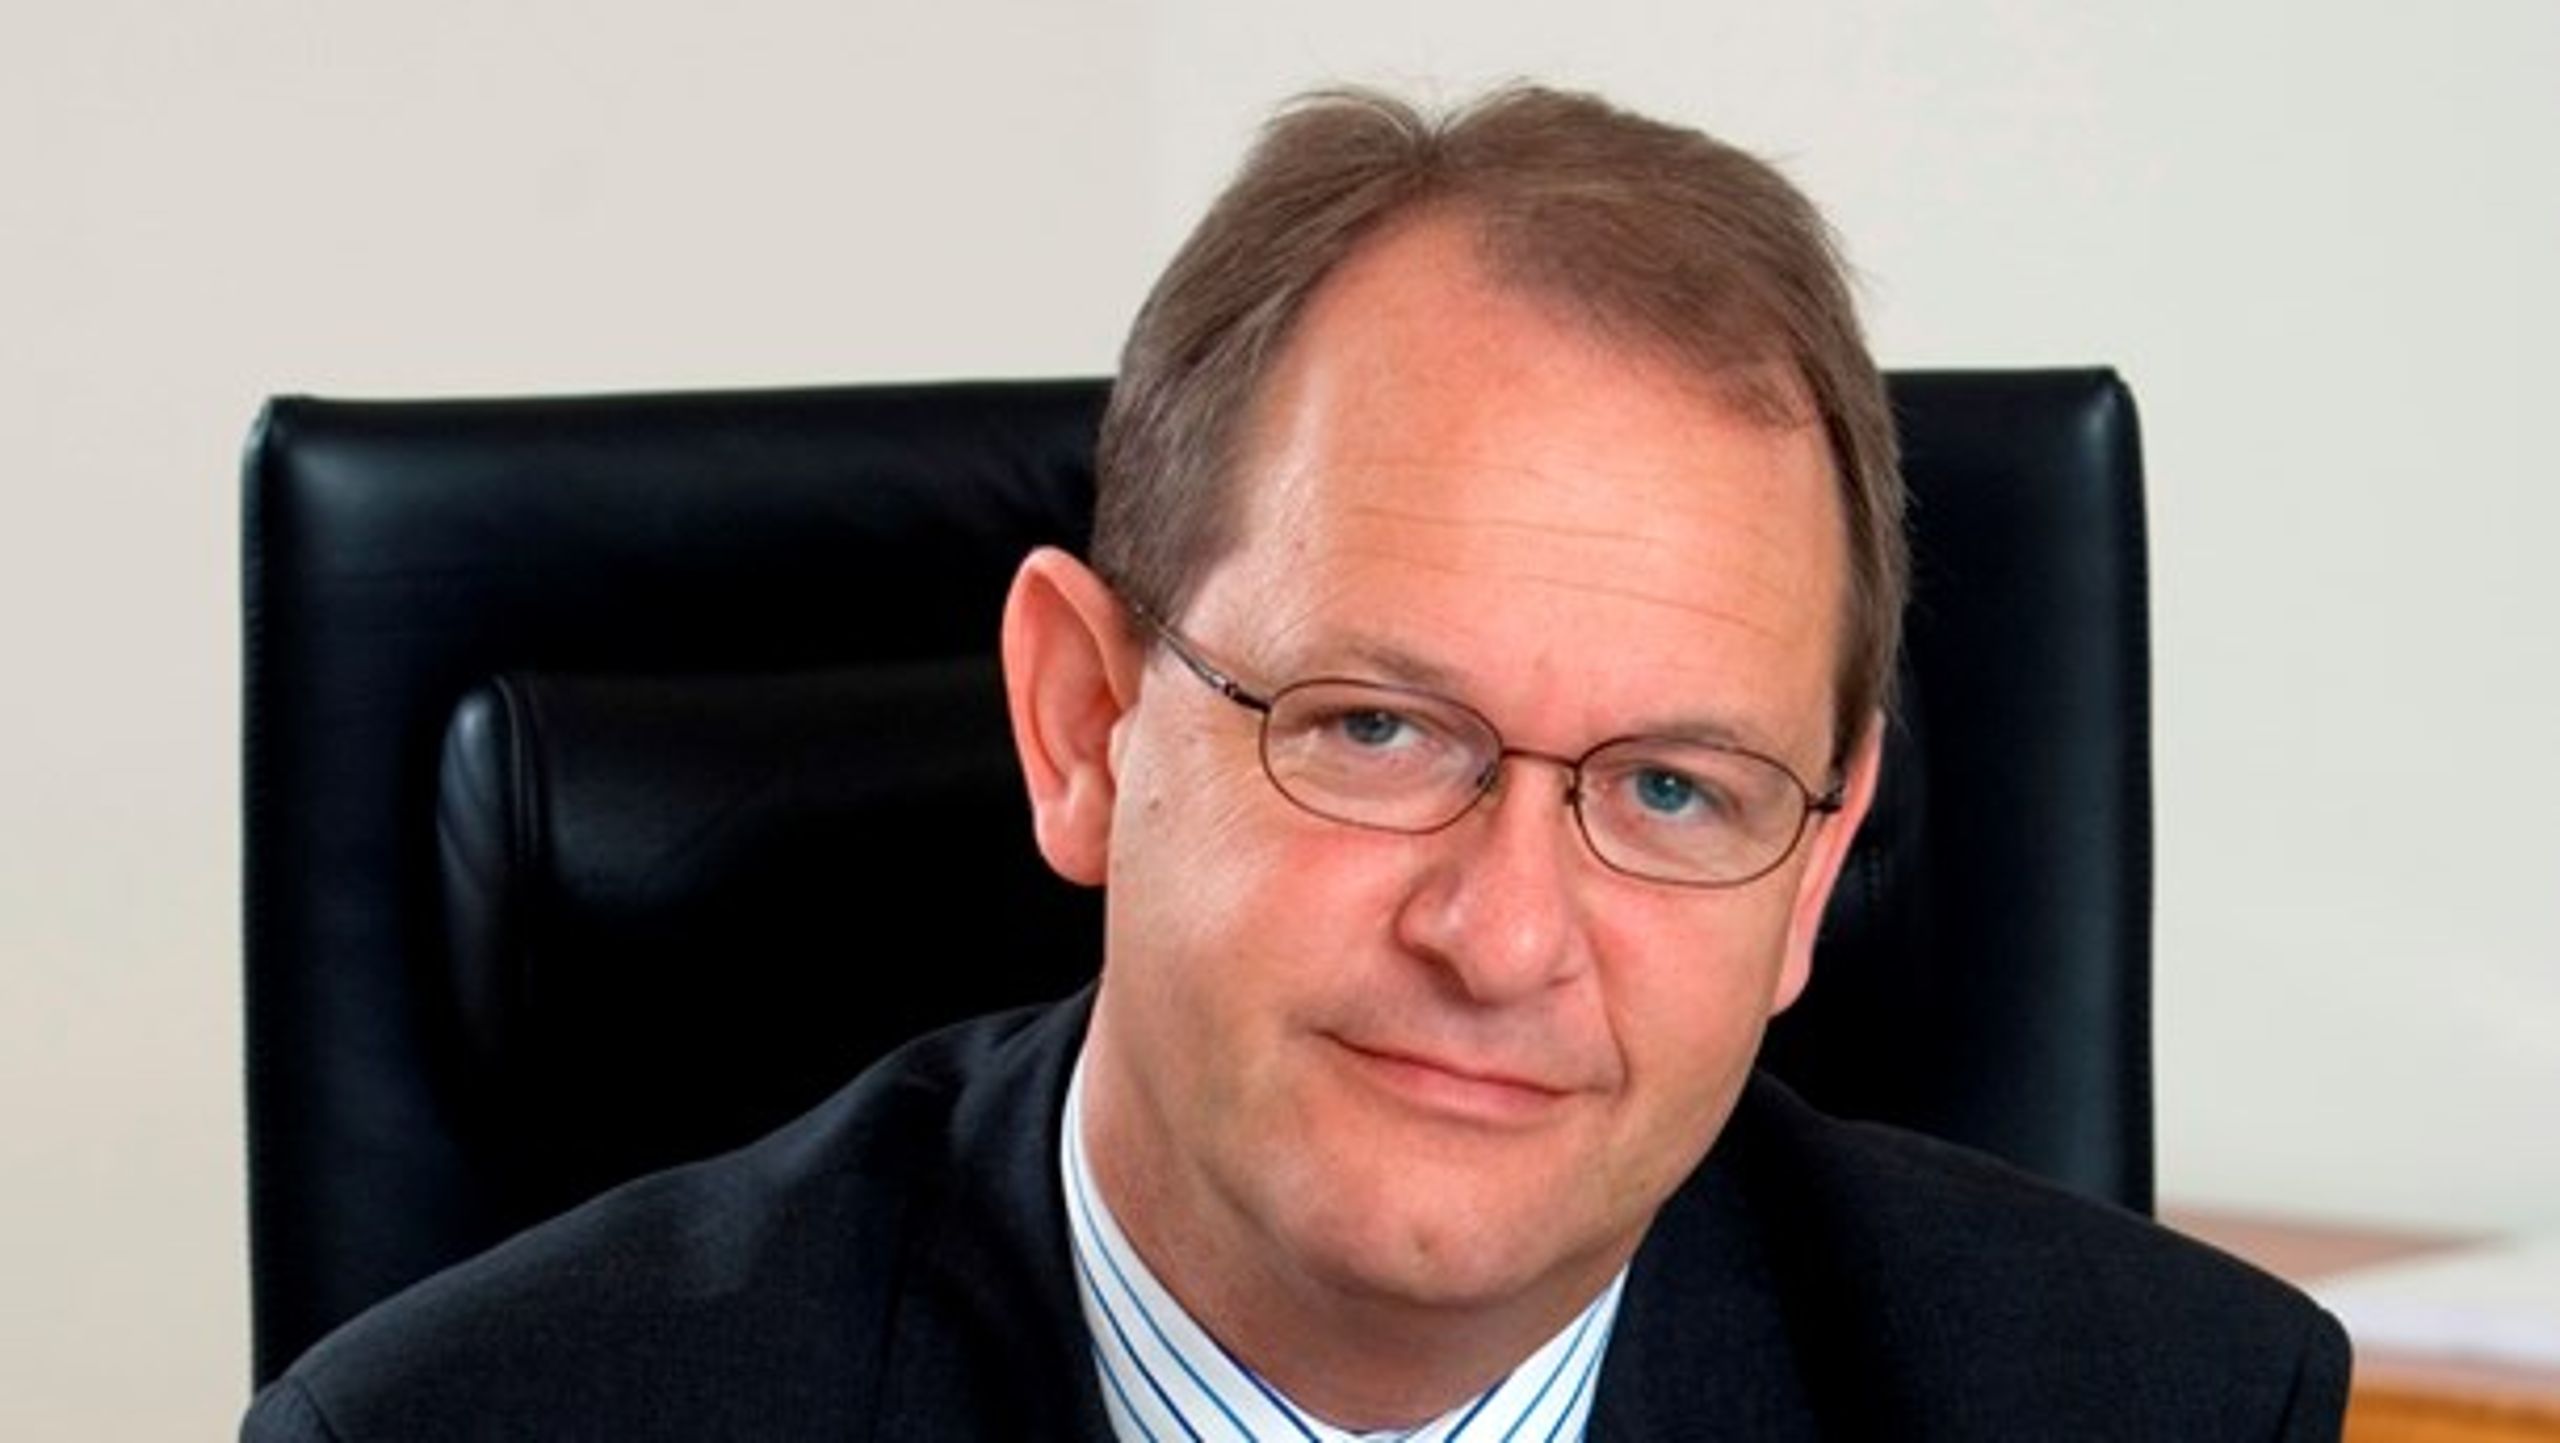 Henrik Bach Mortensen er direktør i Dansk Arbejdsgiverforening og er bestyrelsesformand for DIPD, det Danske Institut for Partier og Demokrati.